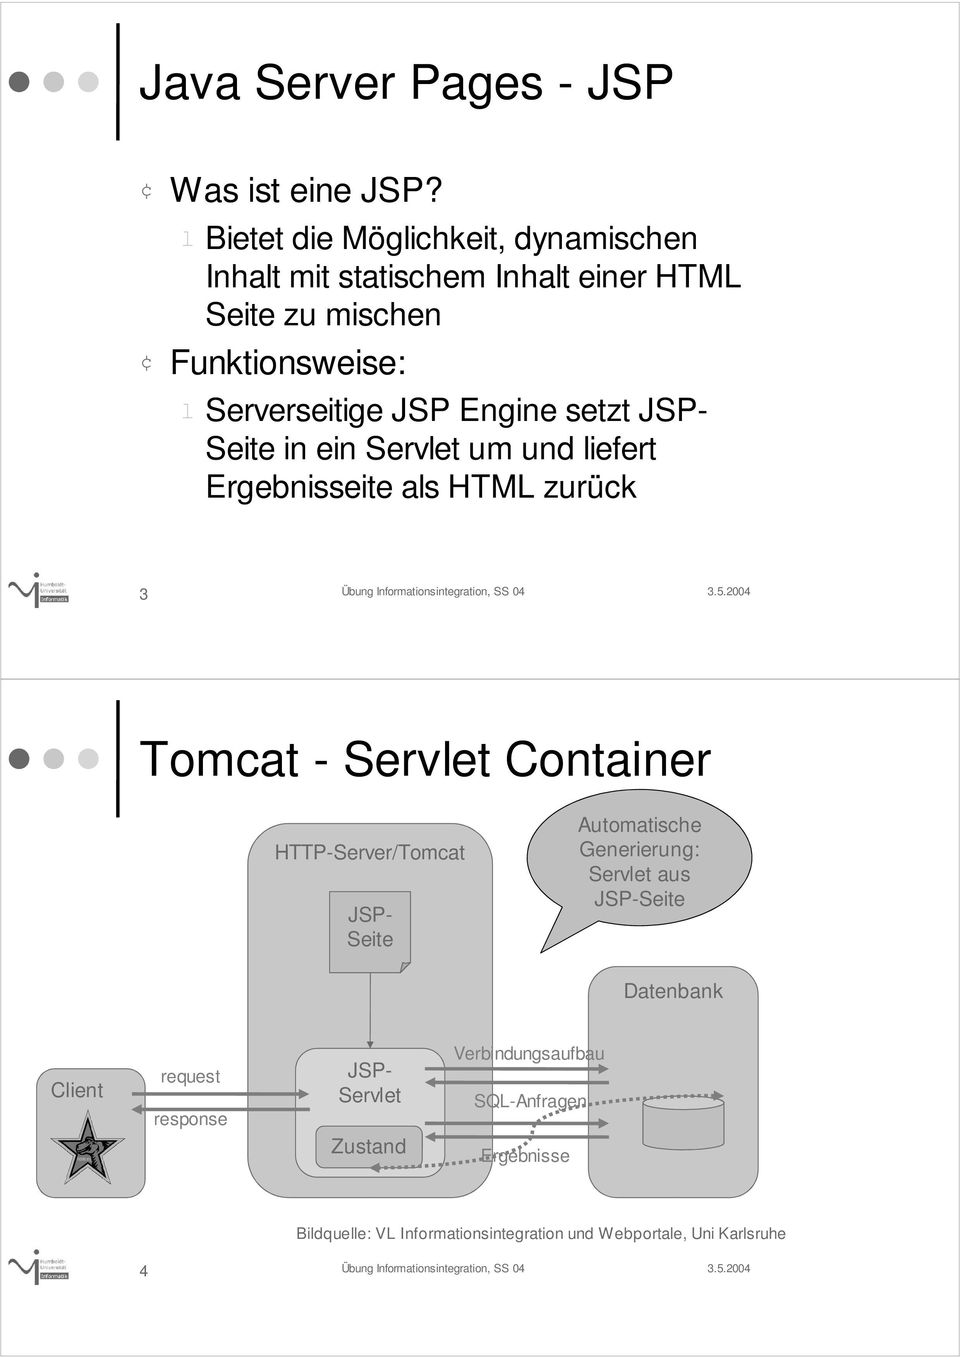 Engine setzt JSP- Seite in ein Servet um und iefert Ergebnisseite as HTML zurück 3 Tomcat - Servet Container HTTP-Server/Tomcat